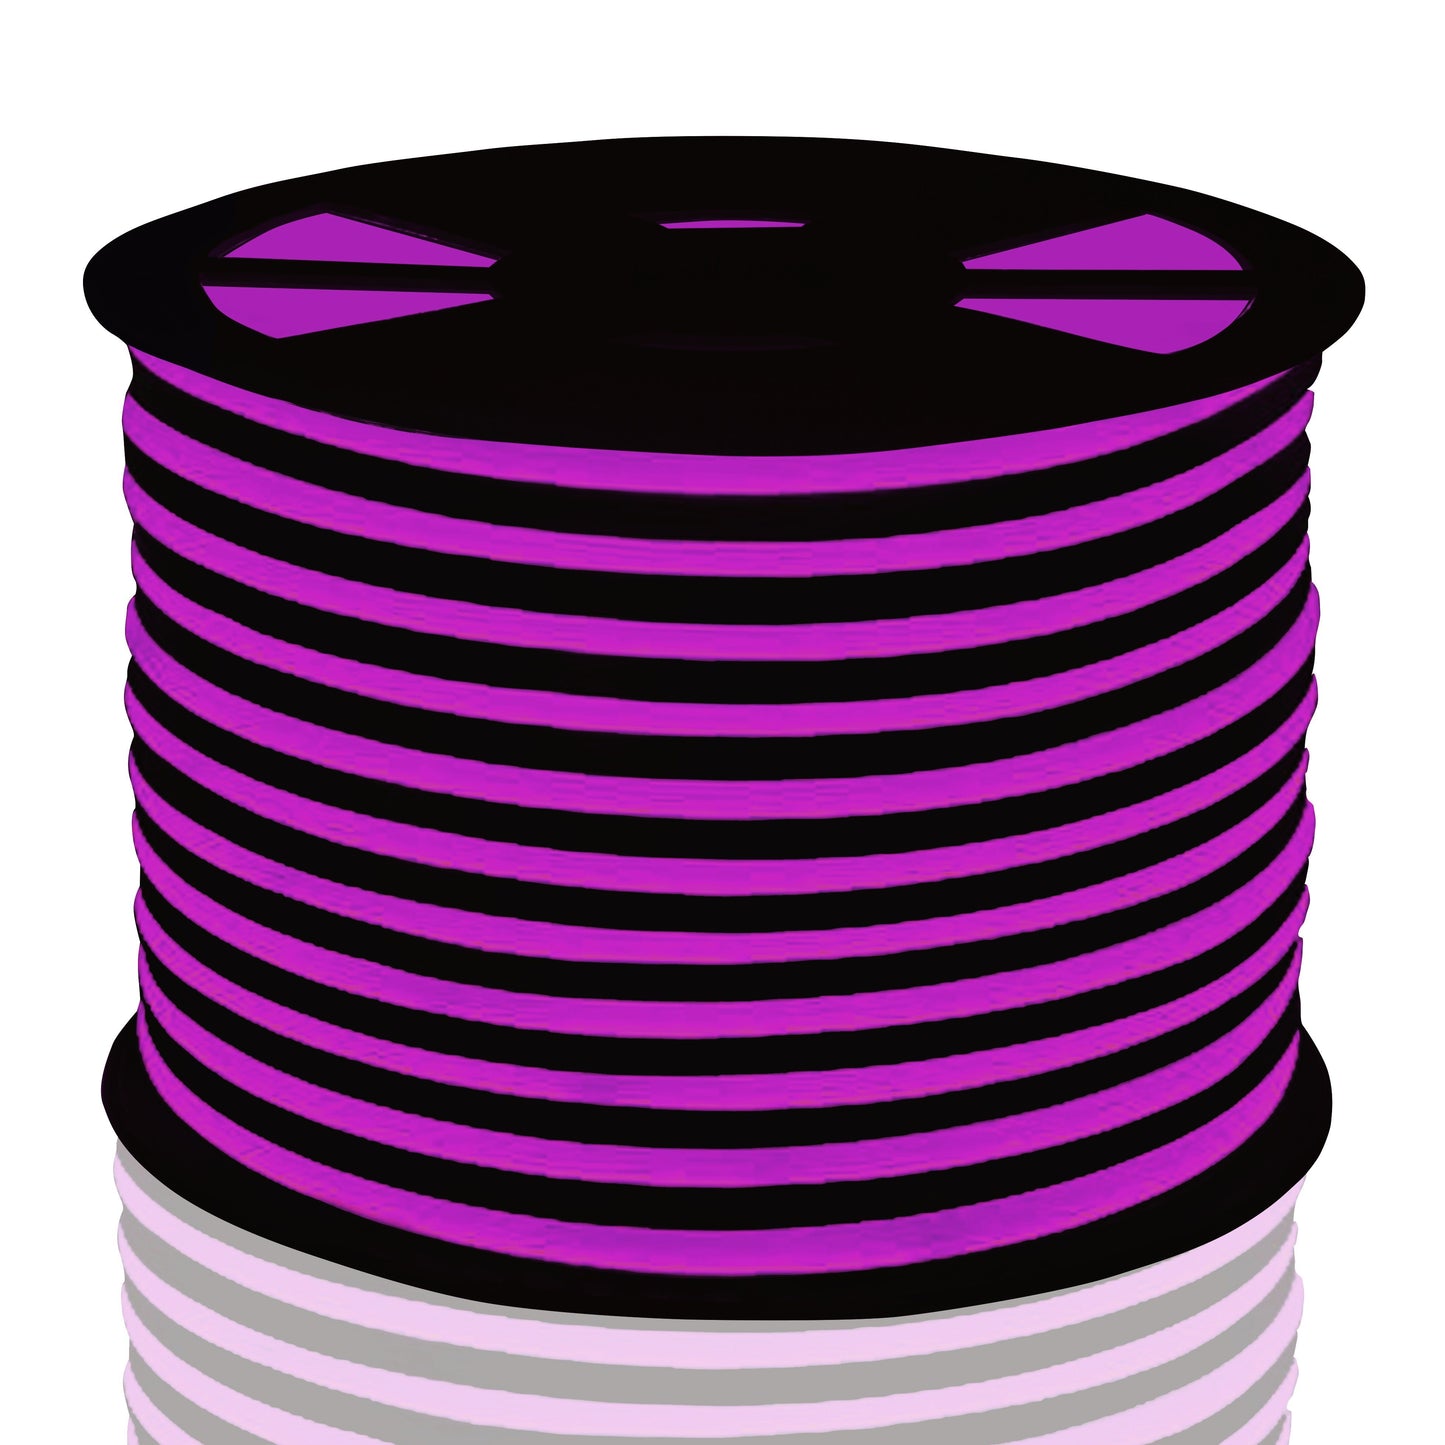 digital rendering of pink neon led strip coiled on black reel